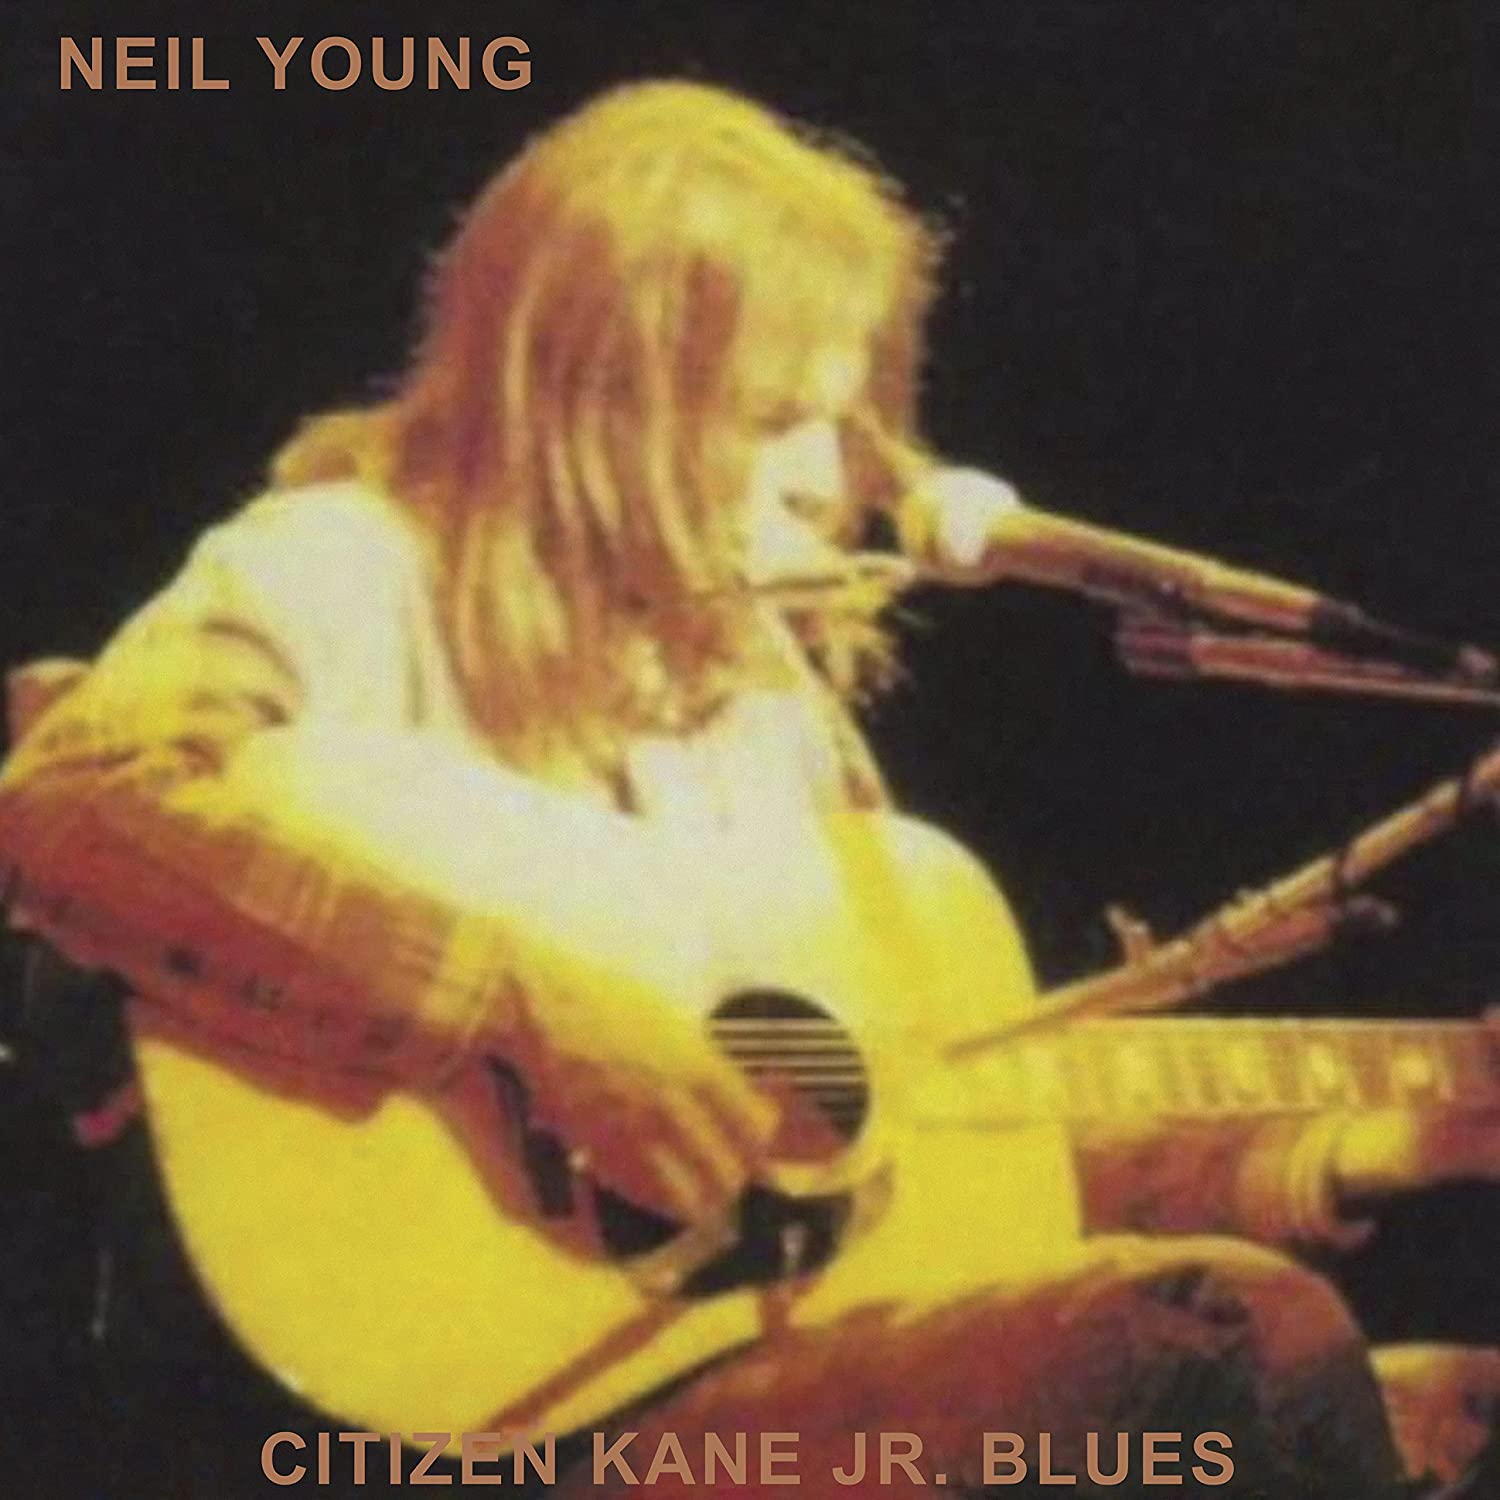 Neil Young - Citizen Kane Jr. Blues (Vinyl LP)